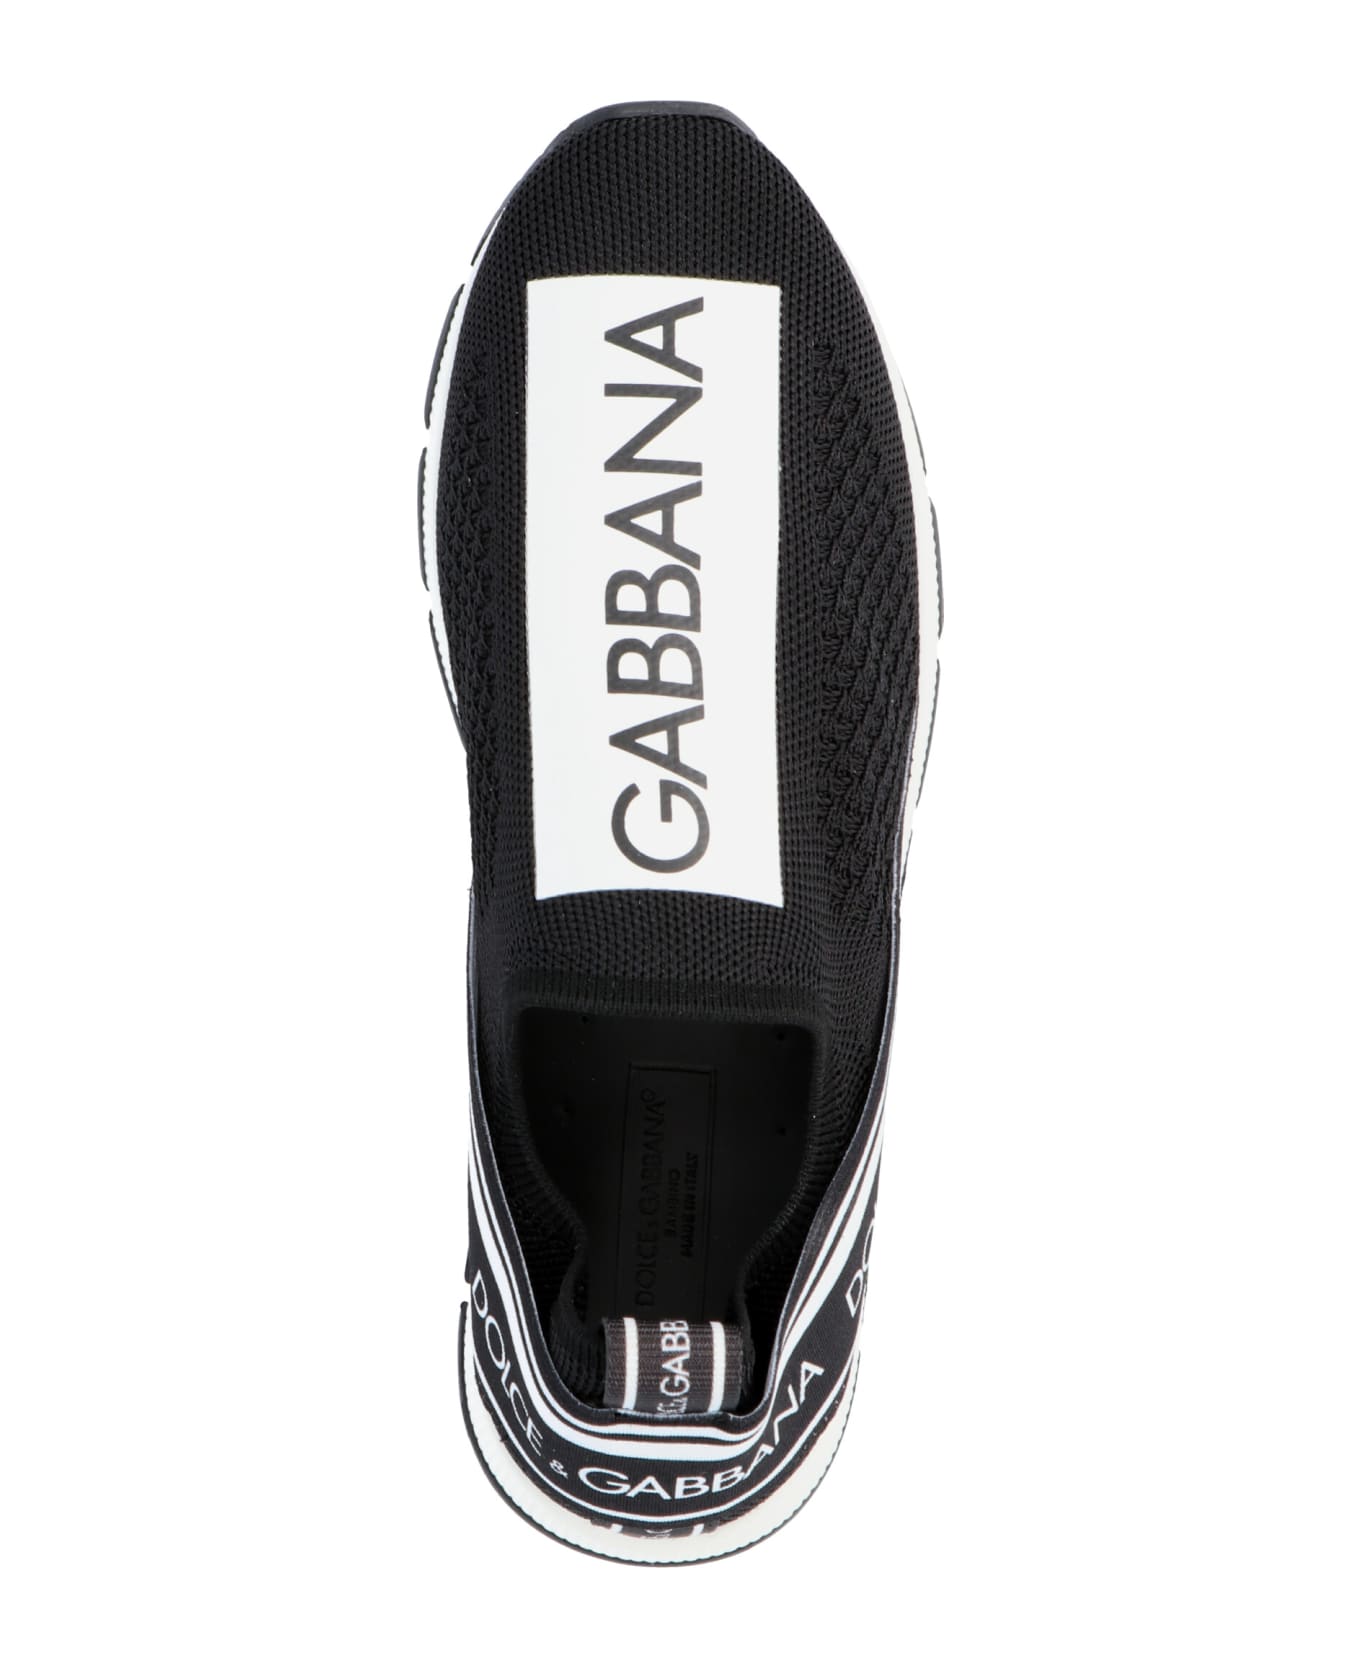 Dolce & Gabbana 'sorrento  Sneakers - White/Black